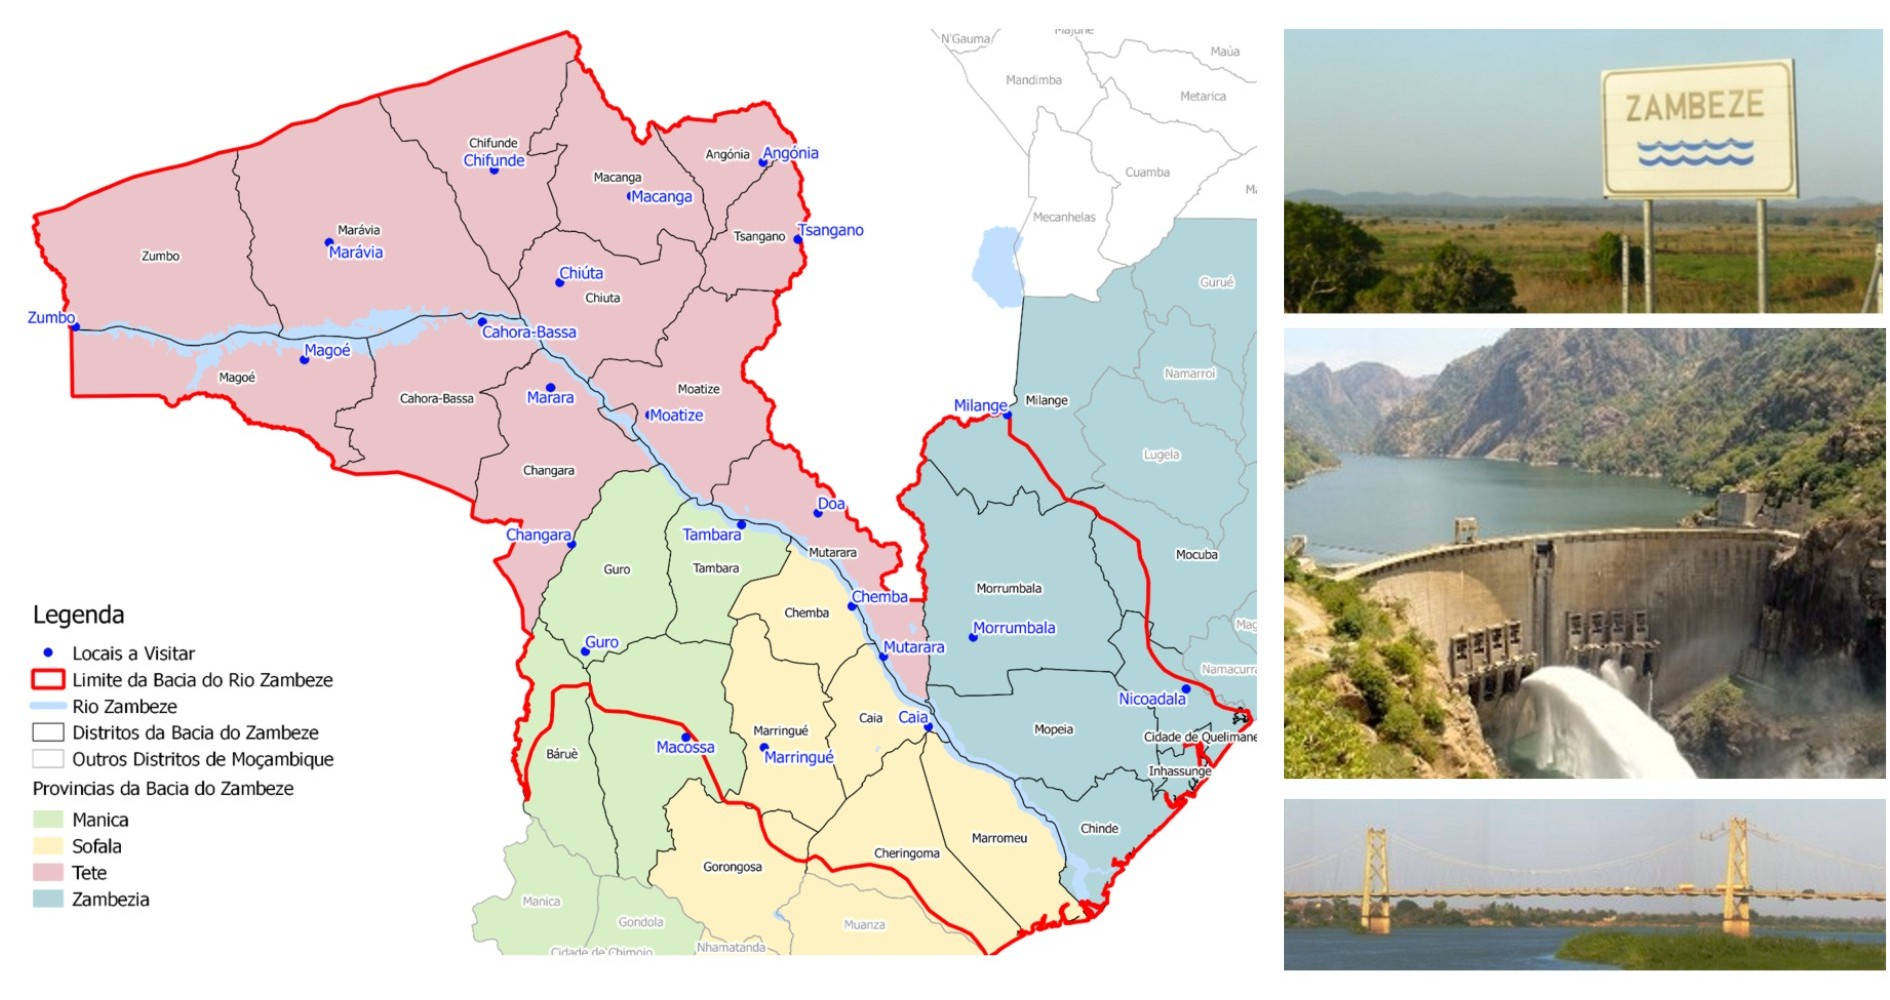 Plano Estratégico para o Desenvolvimento de Obras para Armazenamento de Água na Bacia do Zambeze